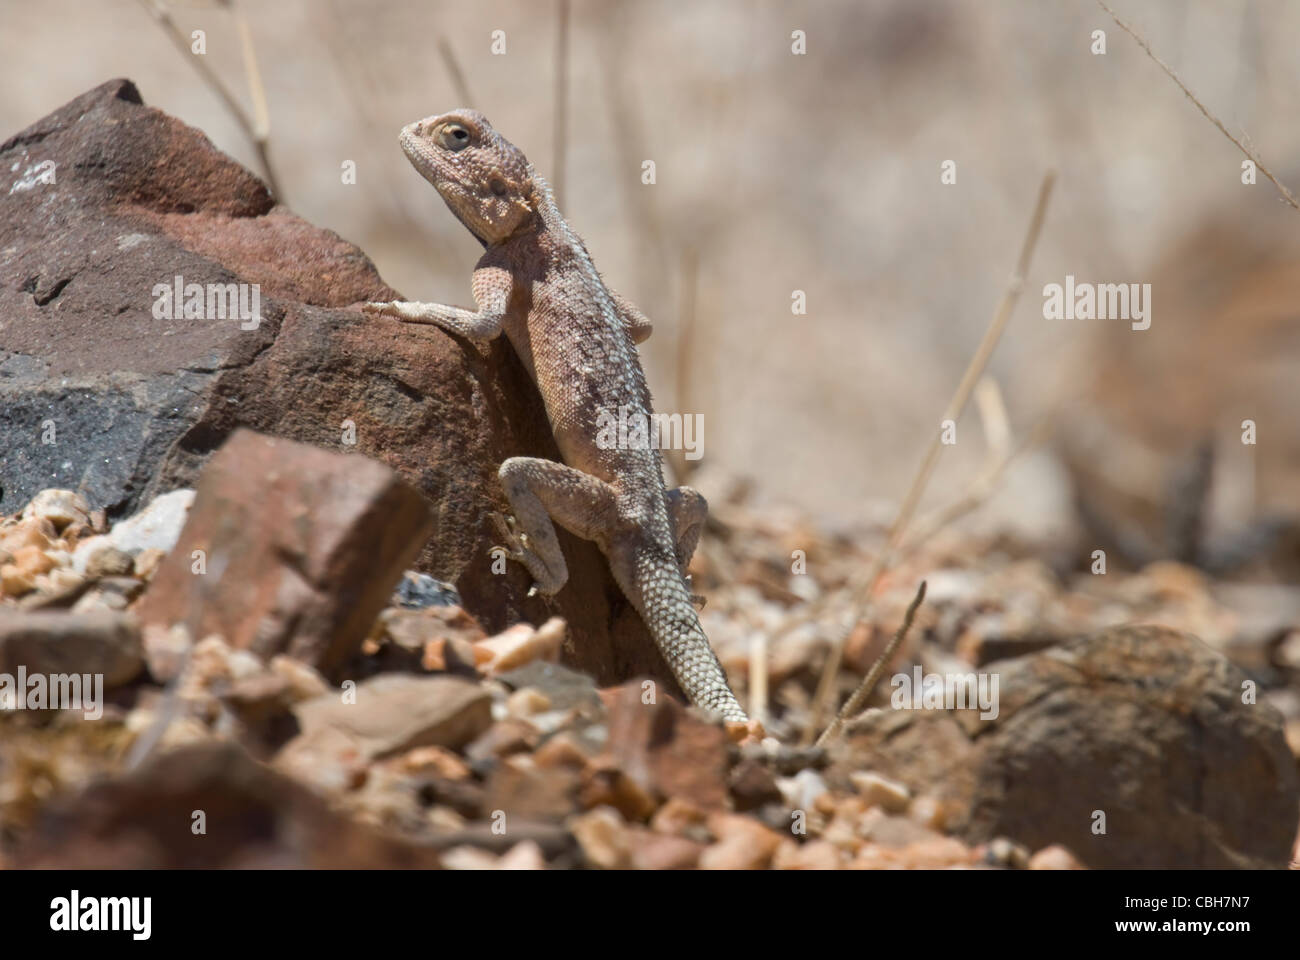 Sabana arbolada Agama lizard escalada Foto de stock